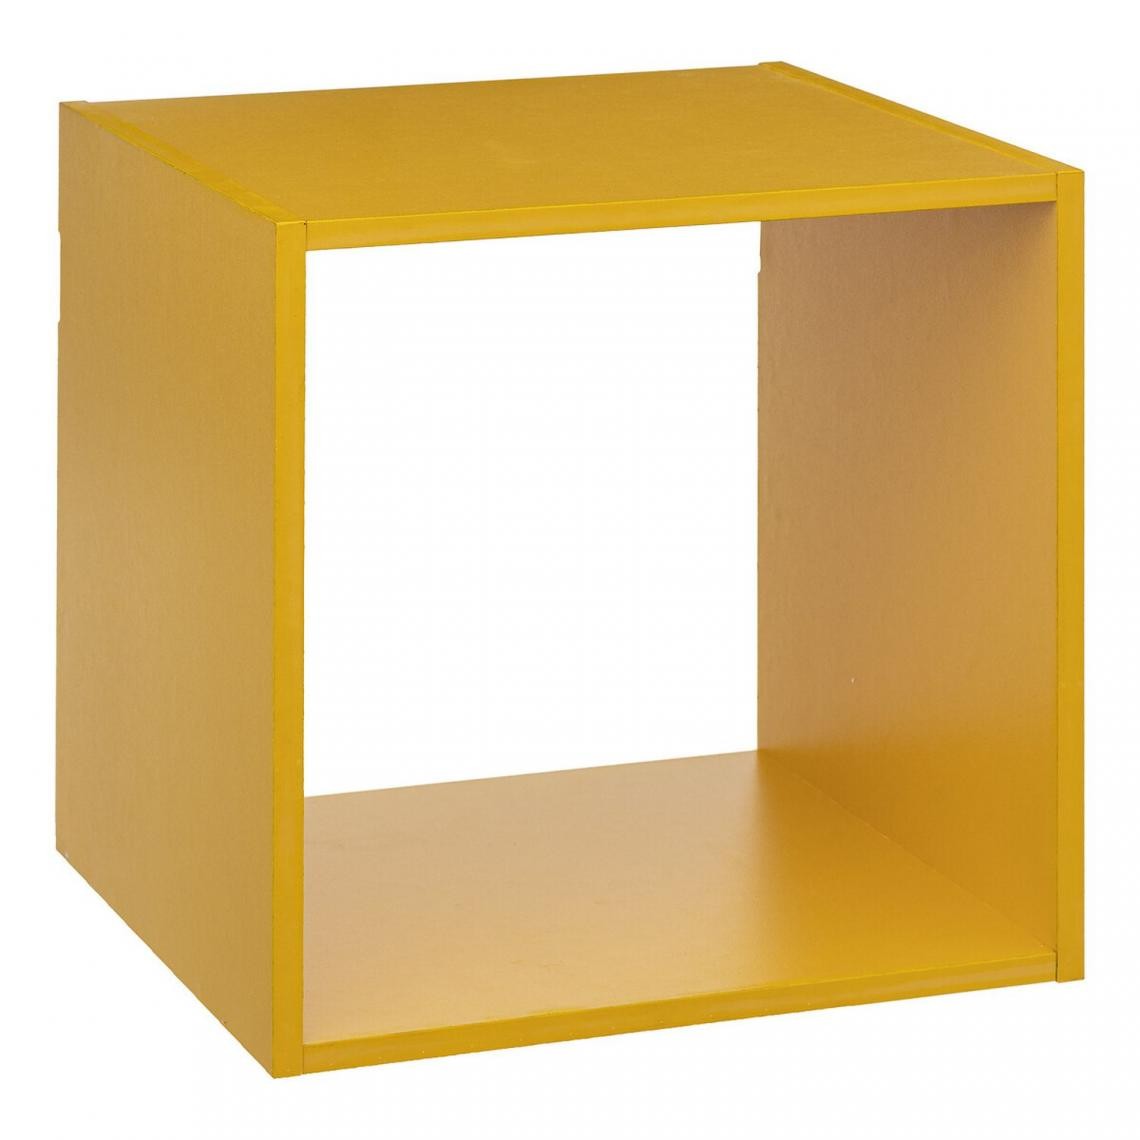 Five Simply Smart - Etagère cube murale 1 case de rangement Mix n' modul - Longueur 34,50 cm x Hauteur 34,50 cm - Jaune moutarde - Etagères